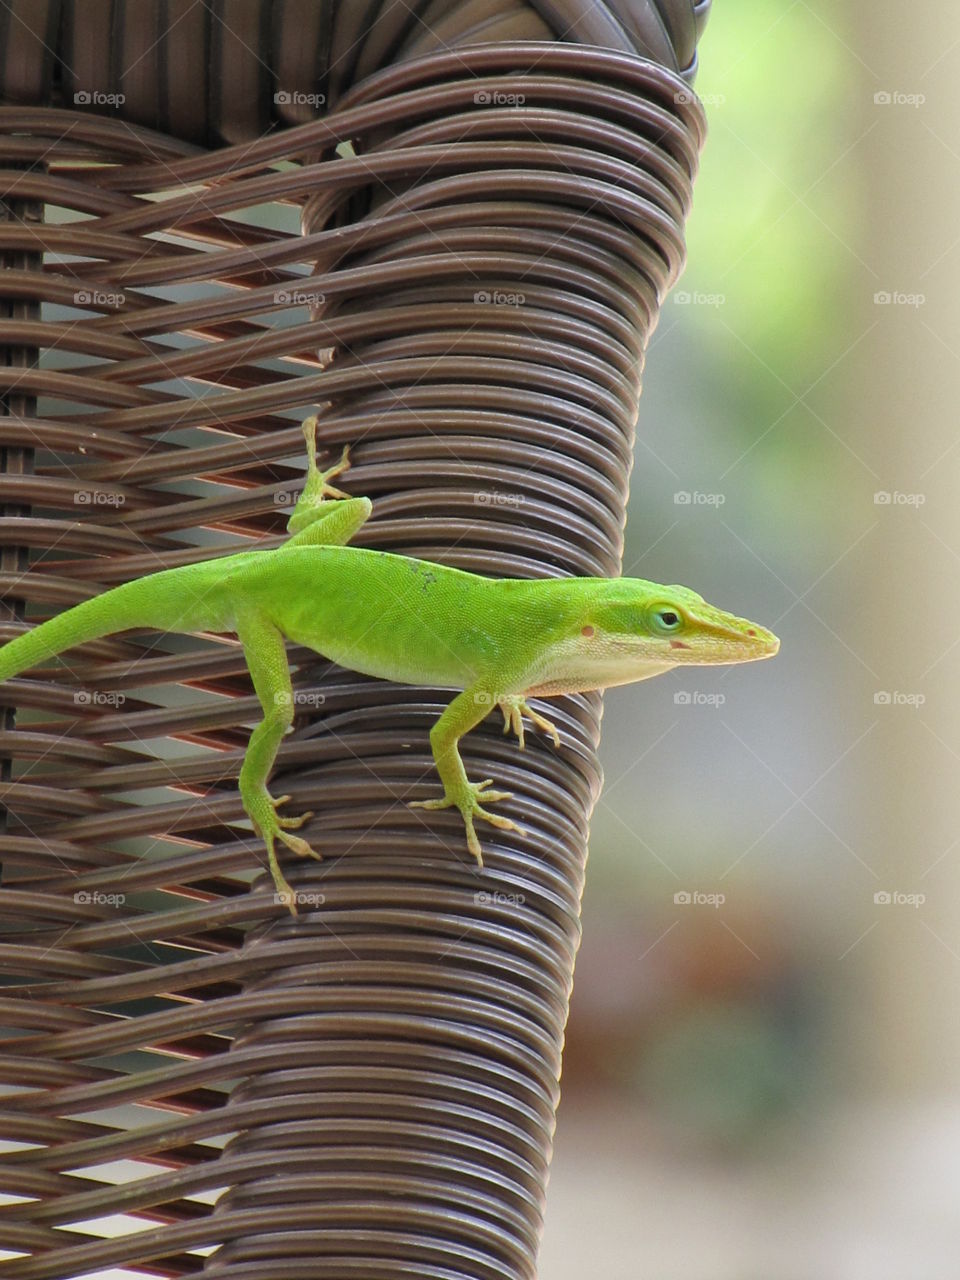 Green lizard on a lawn chair